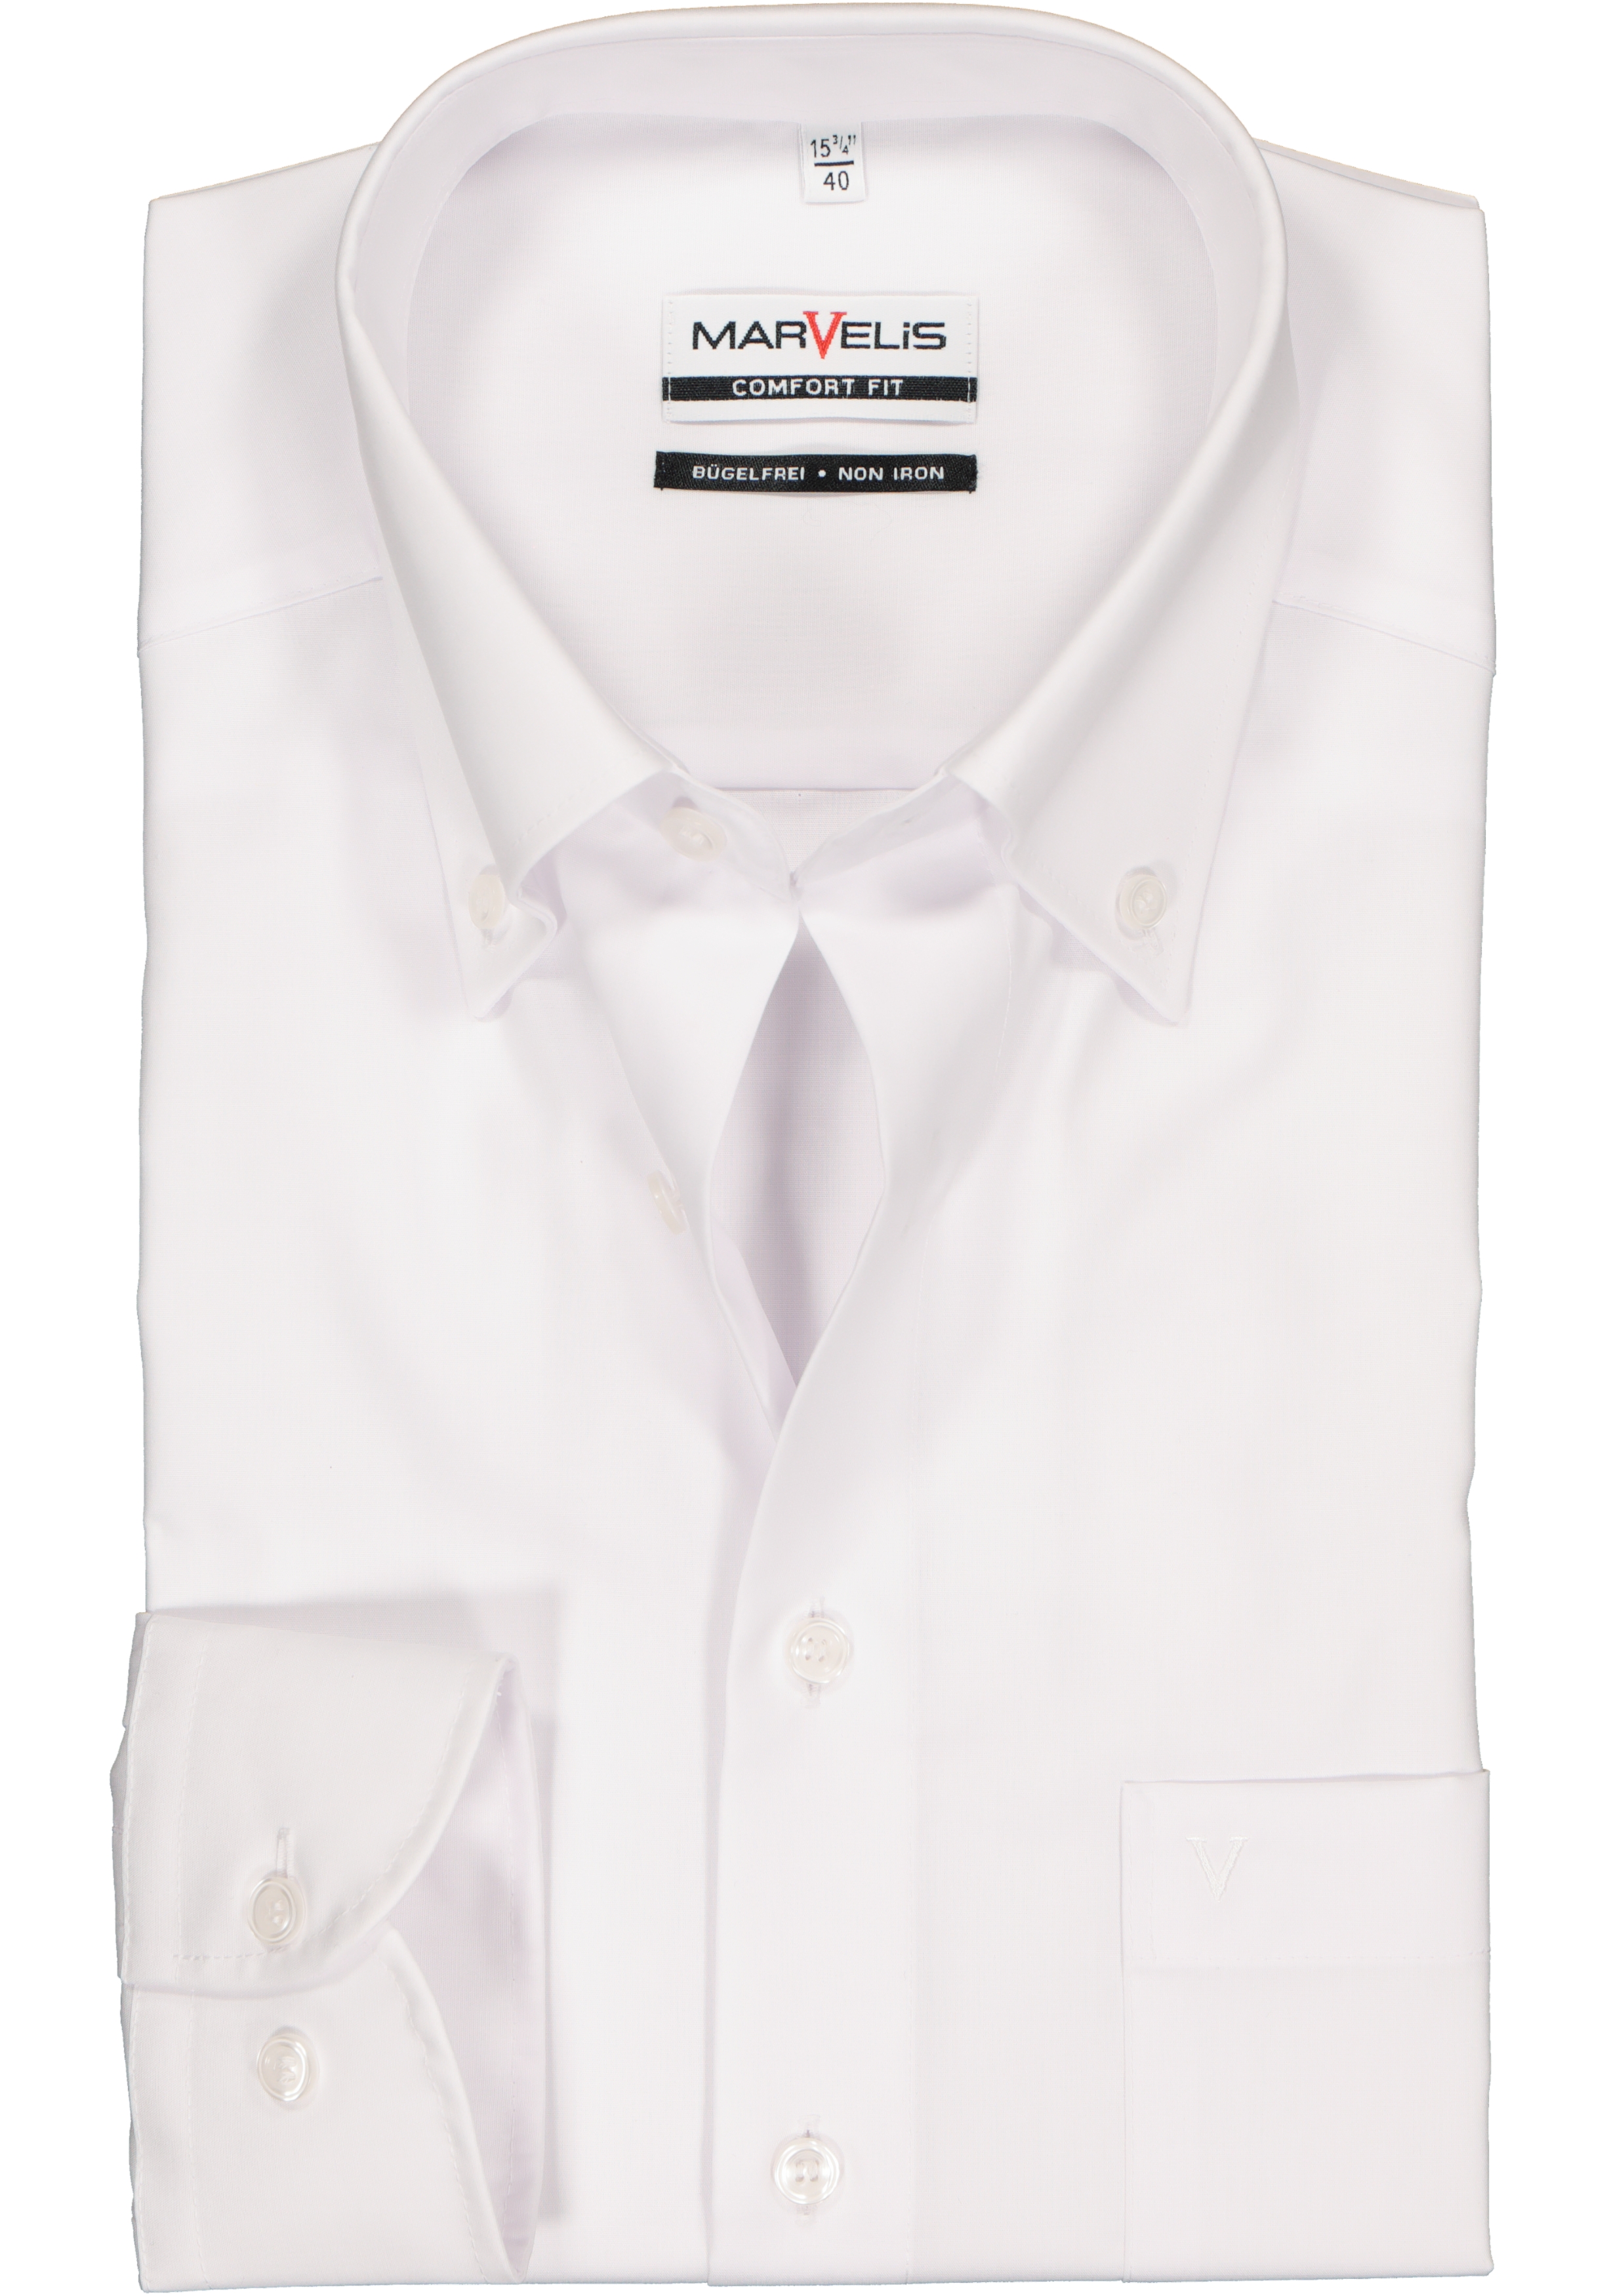 MARVELIS comfort fit overhemd, wit met button-down kraag